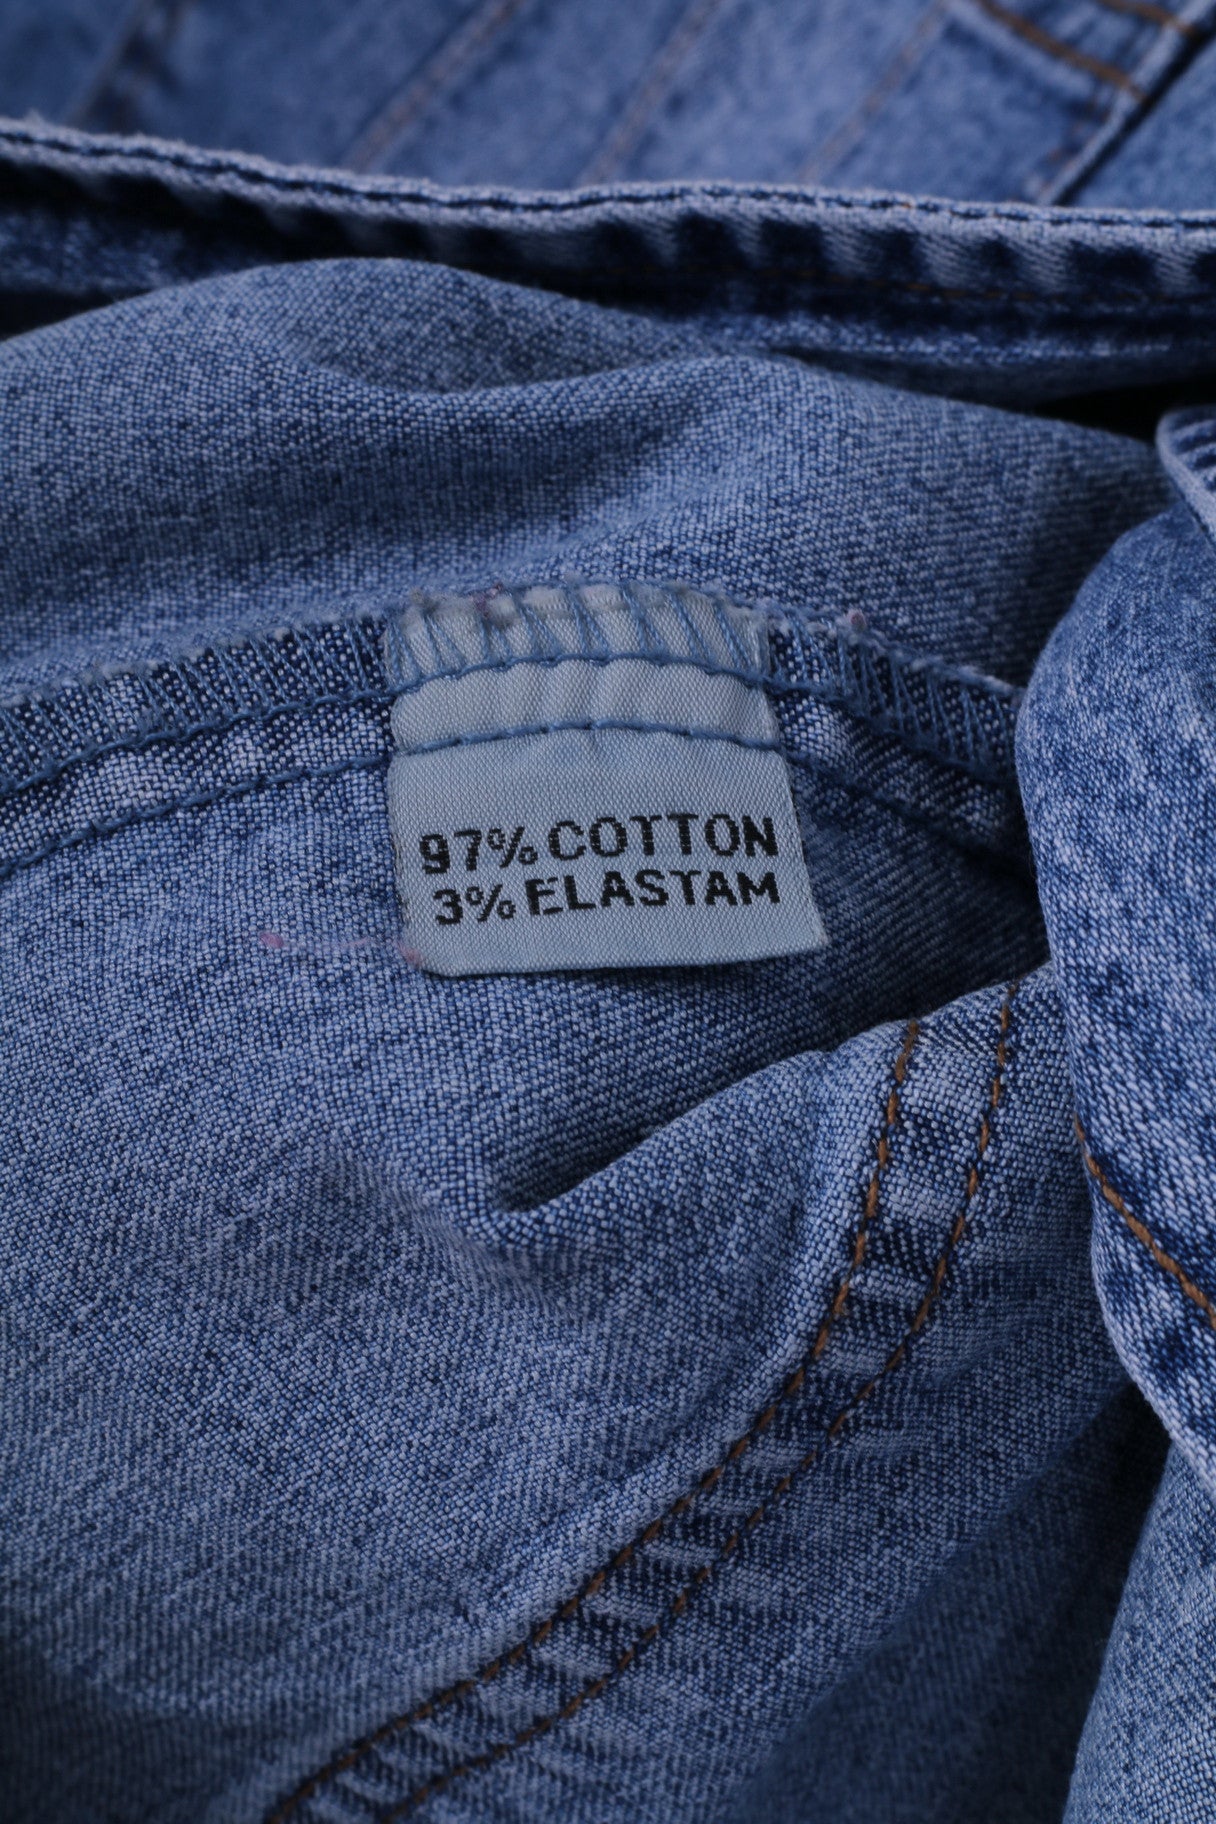 Jeans haute couture pour femmes, veste XL en Denim bleu, Blazer extensible à simple boutonnage